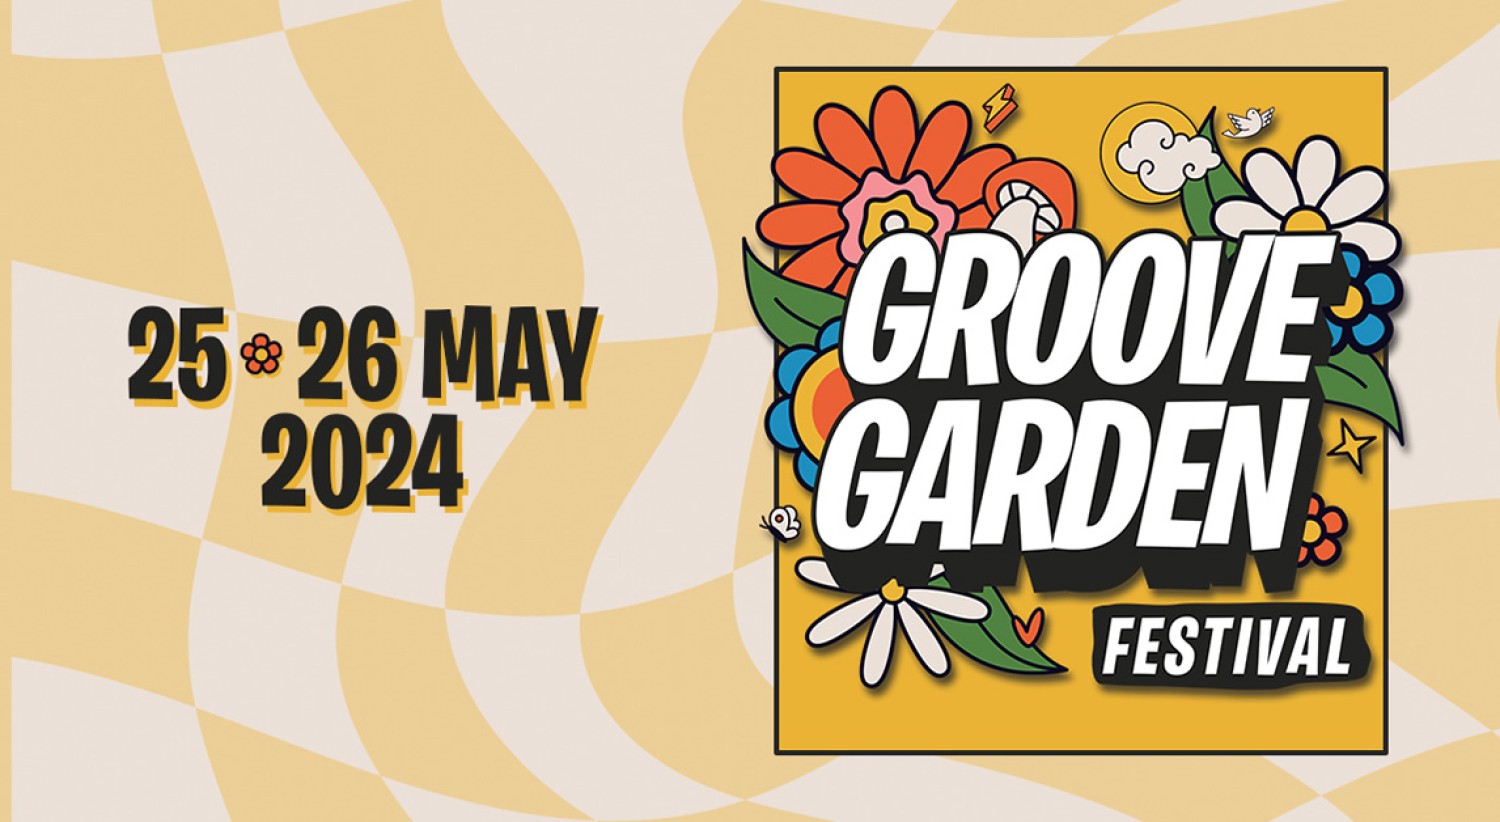 Groove Garden Festival 2024